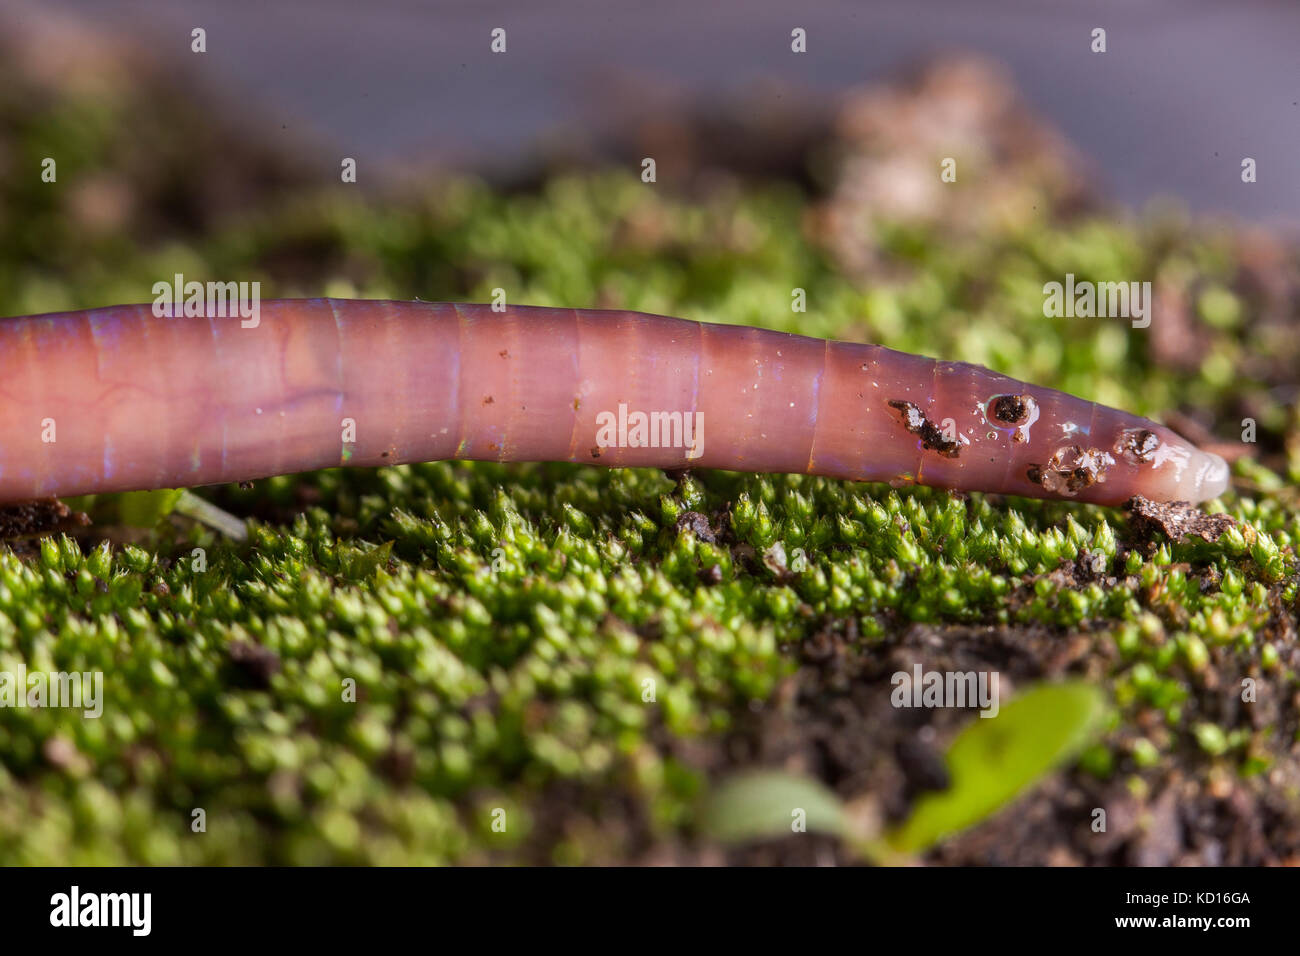 Earthworm showing setae Stock Photo - Alamy